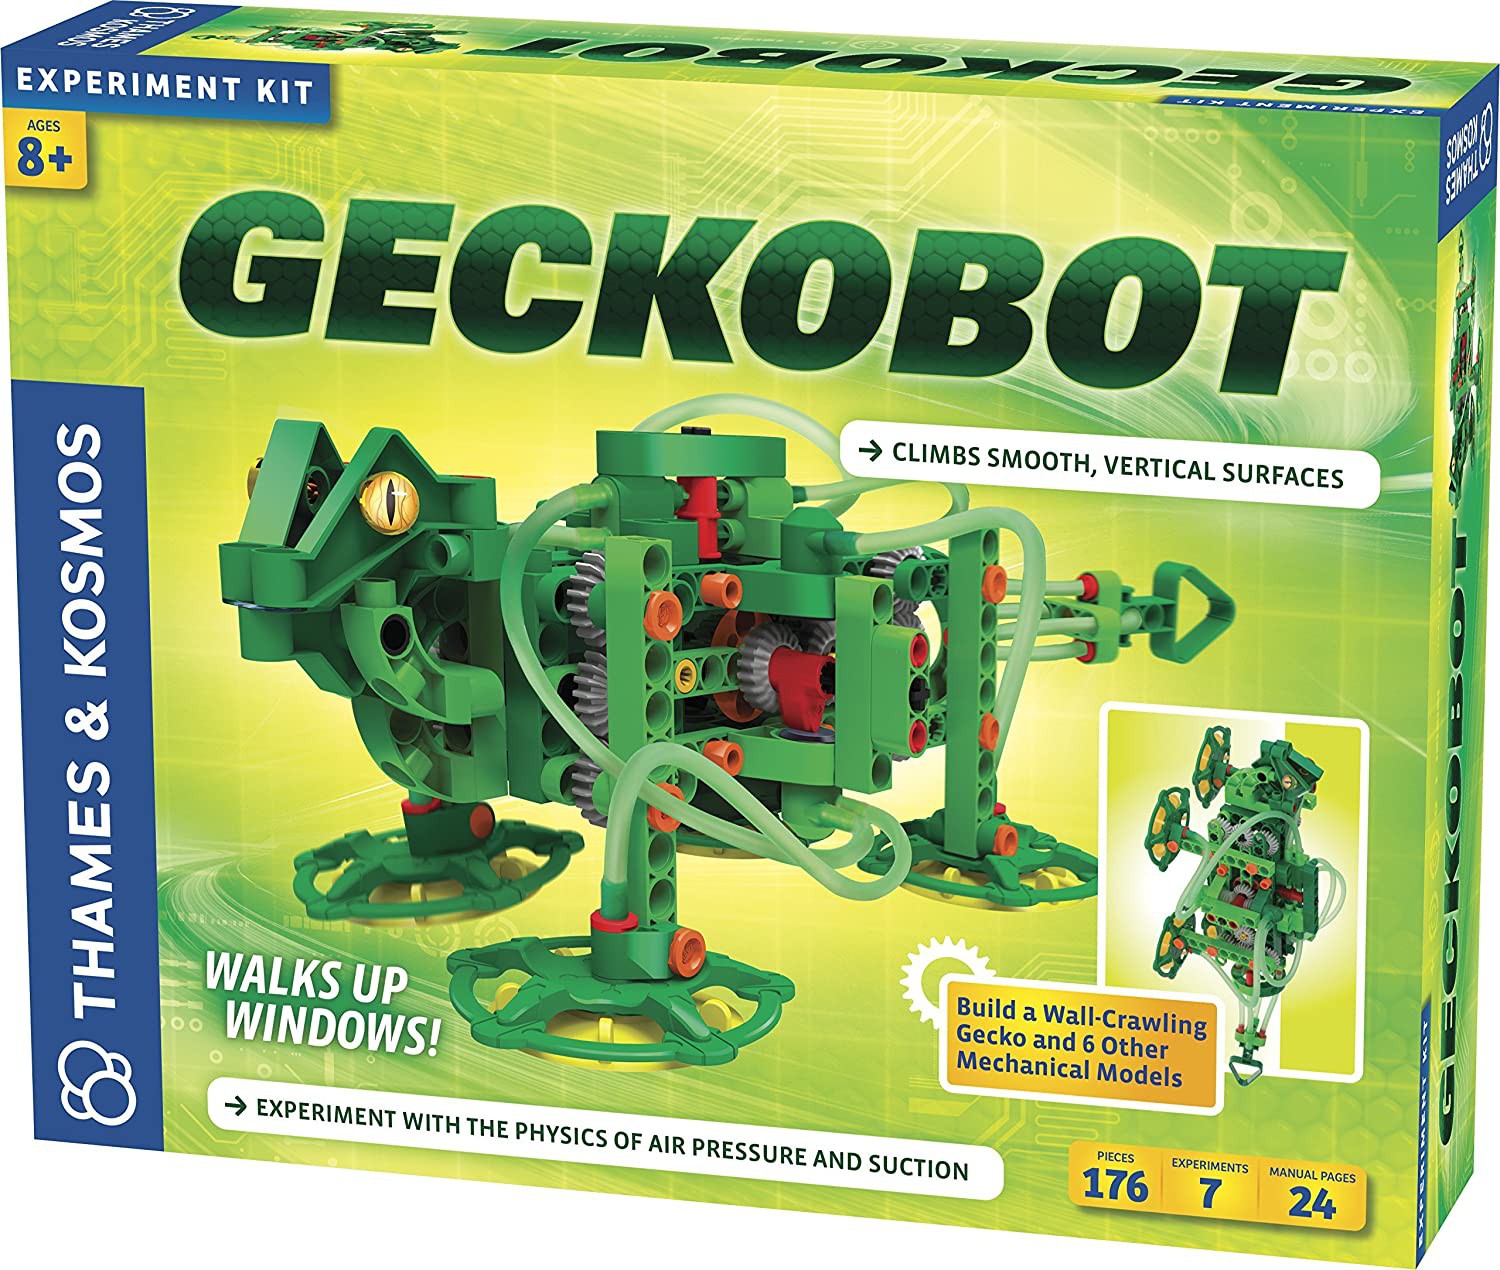  Gekobot Wall Climbing Robot - Thames & Kosmos  STEM